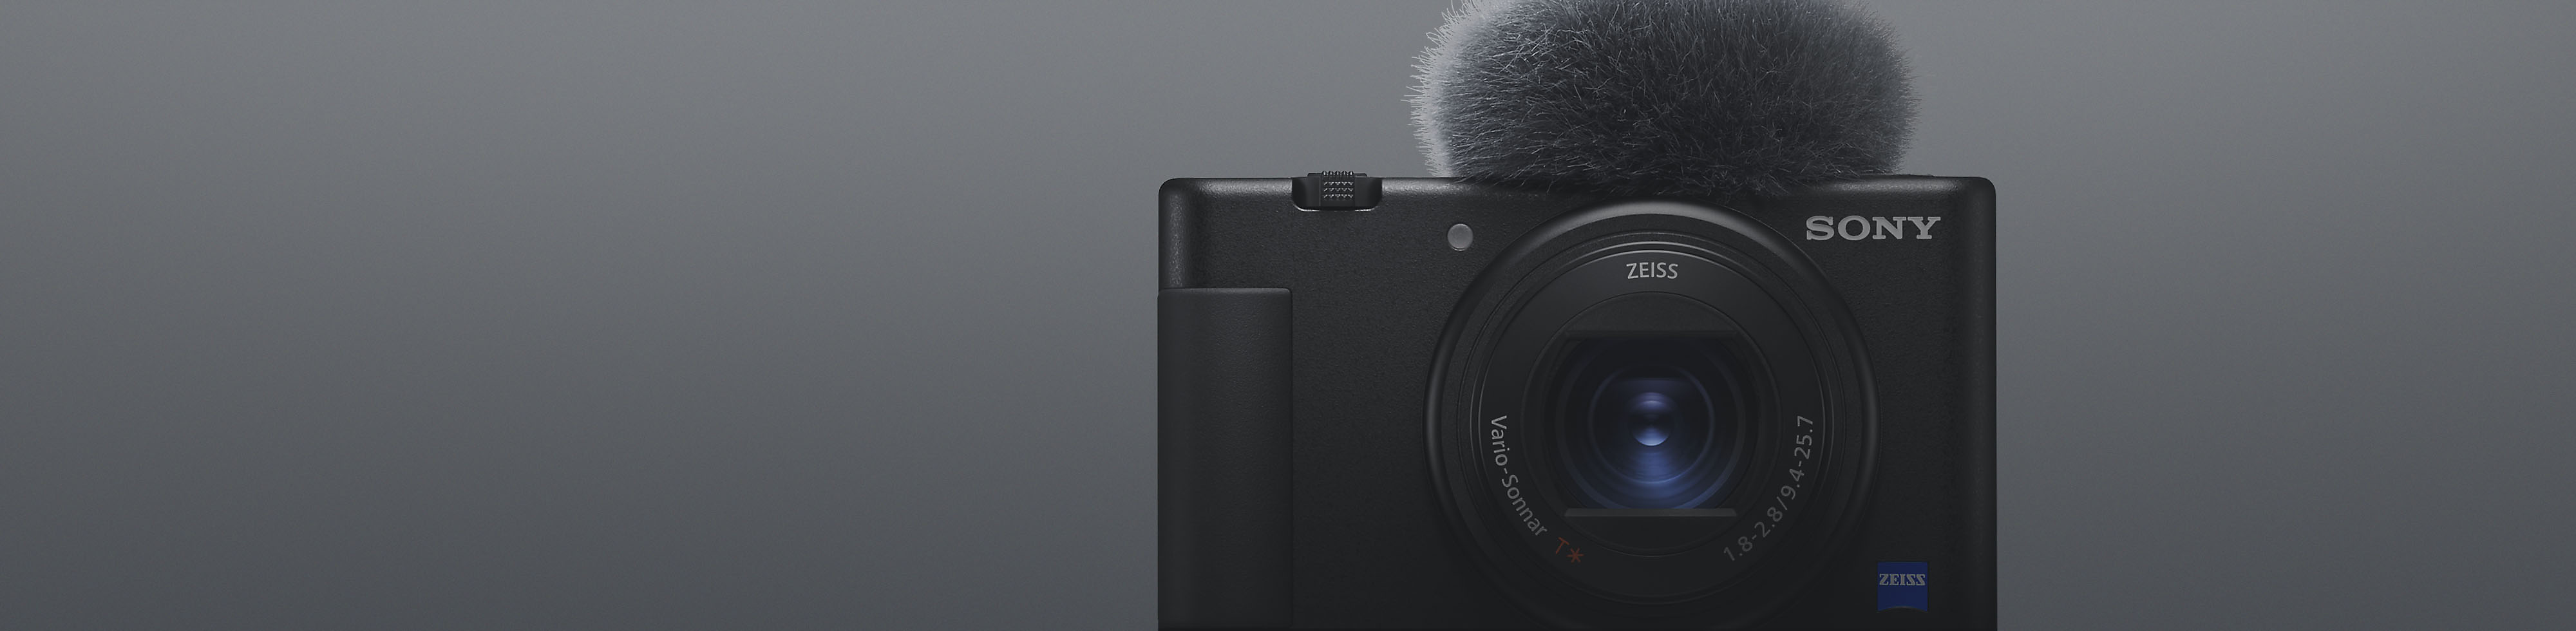 Чорна компактна камера Sony з прикріпленим мікрофоном, вид спереду